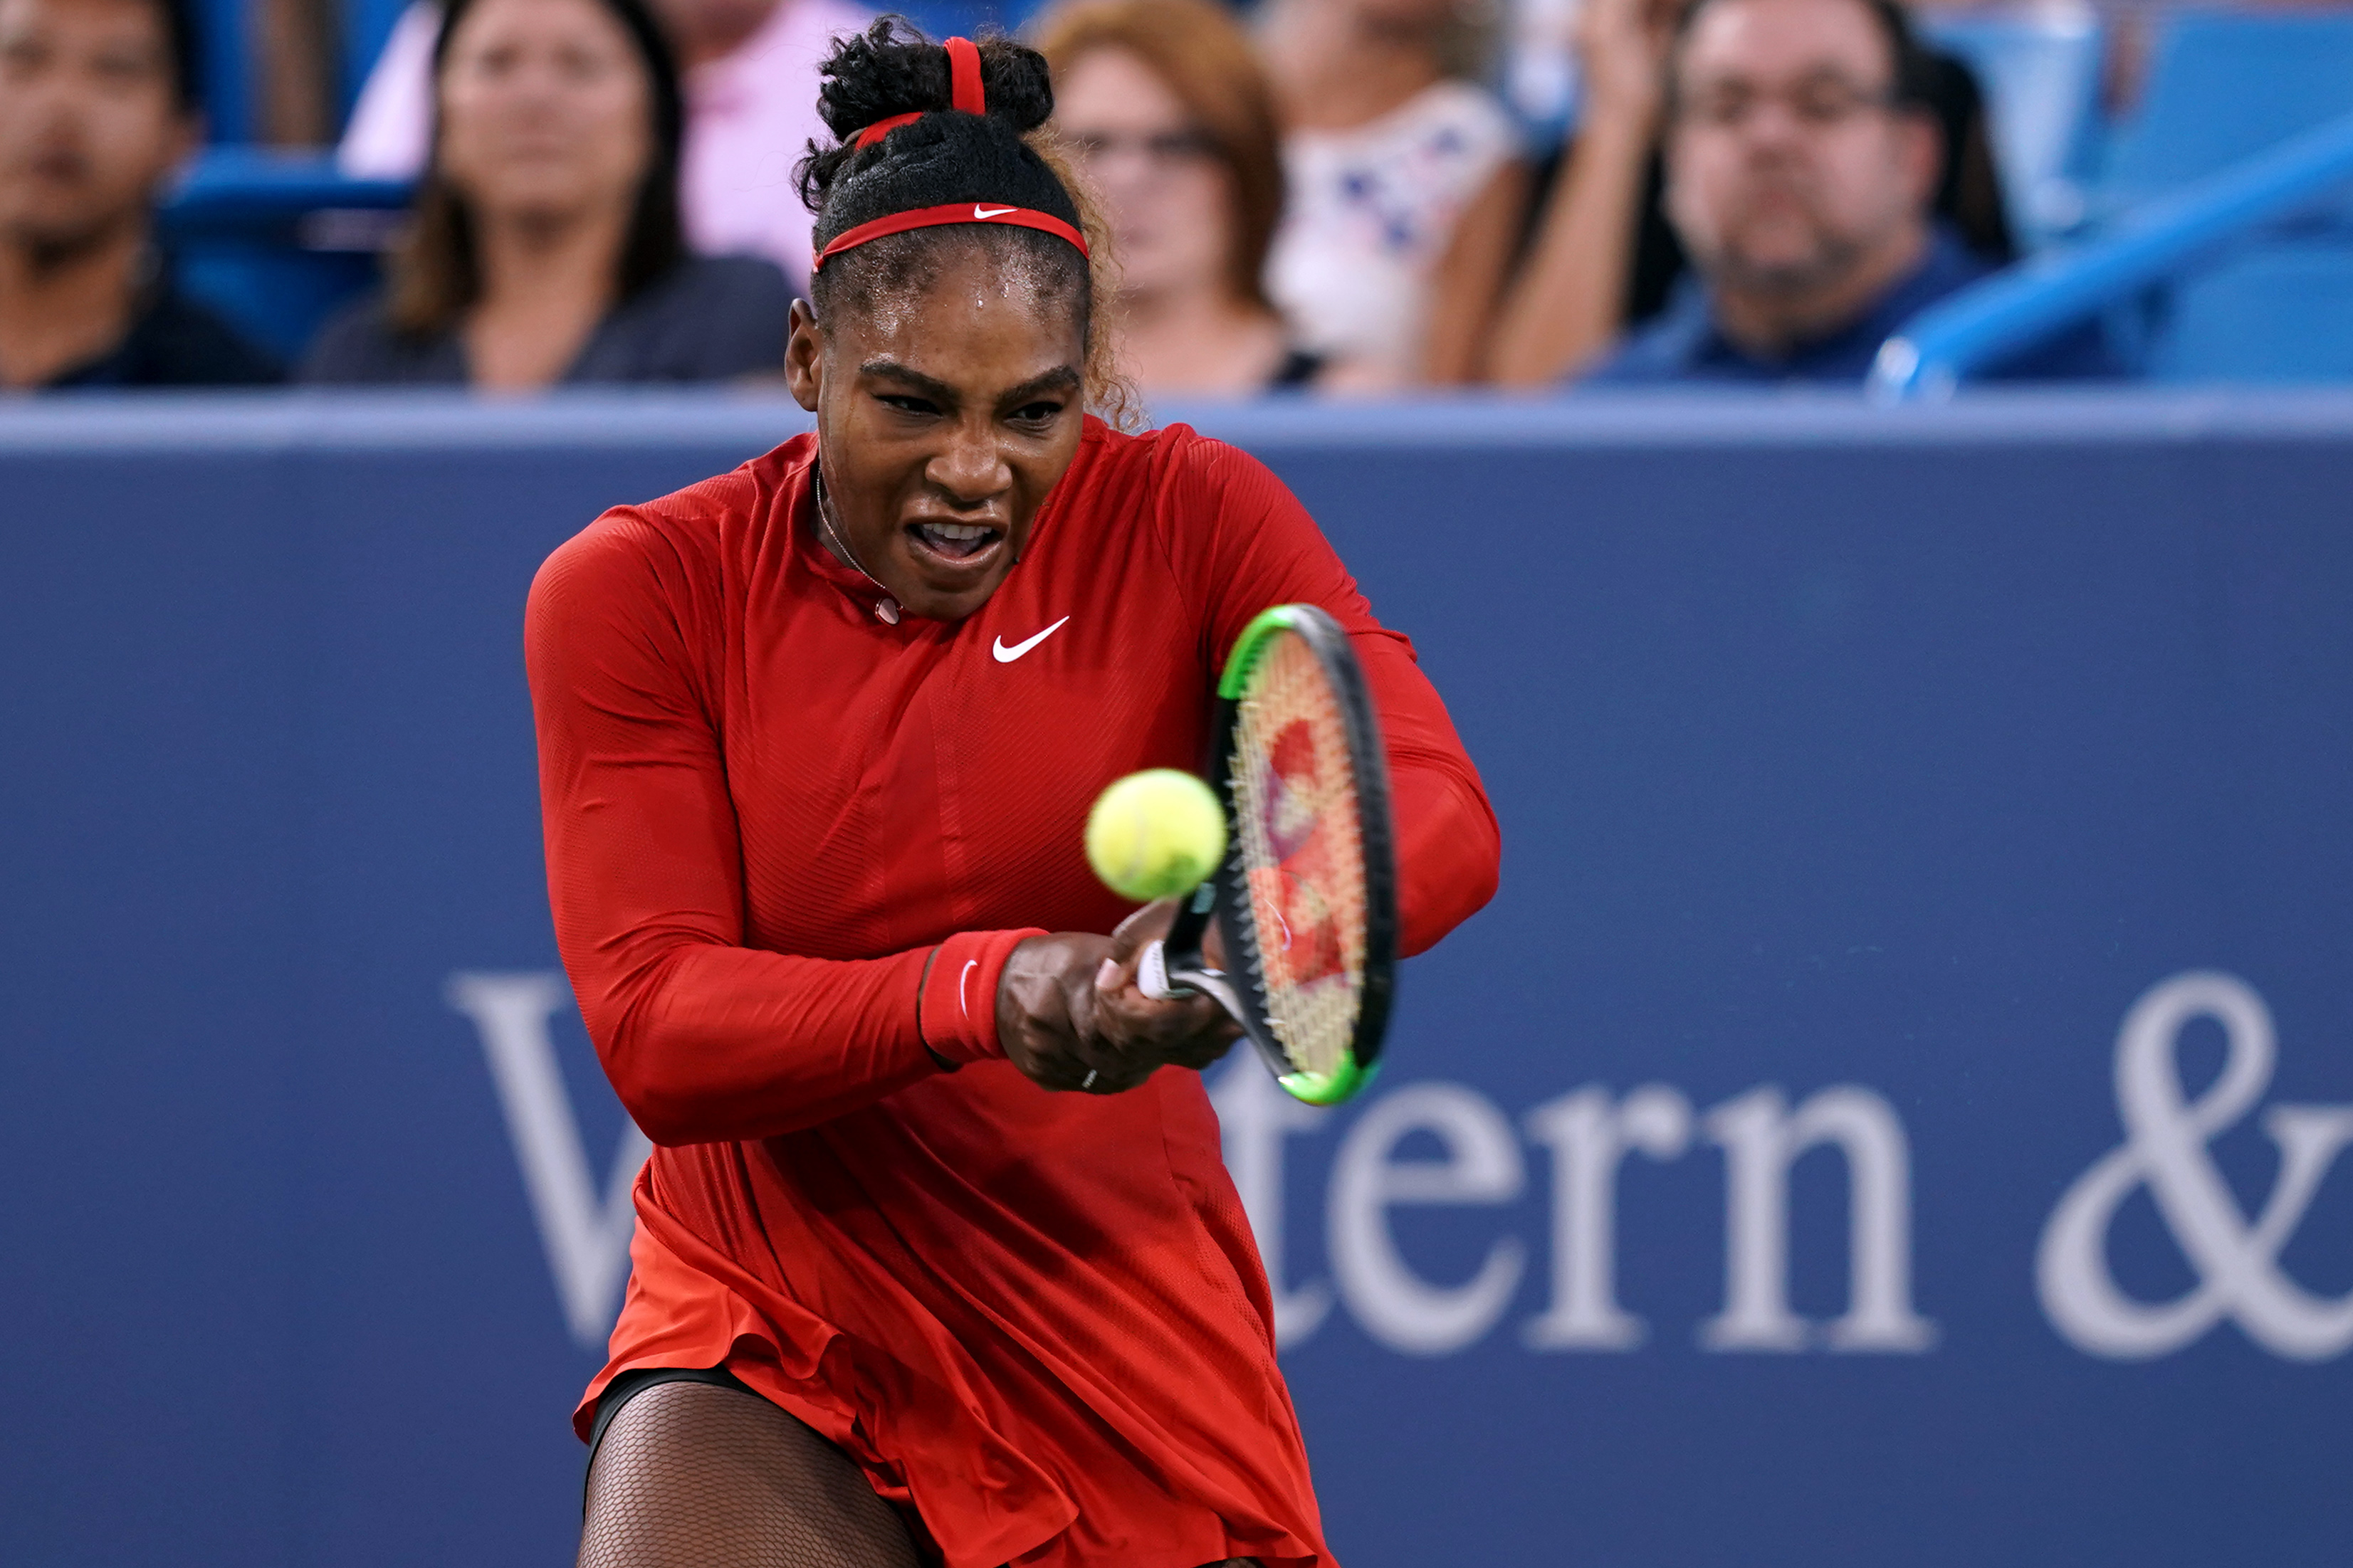 Serena dominates in return at Cincinnati Masters